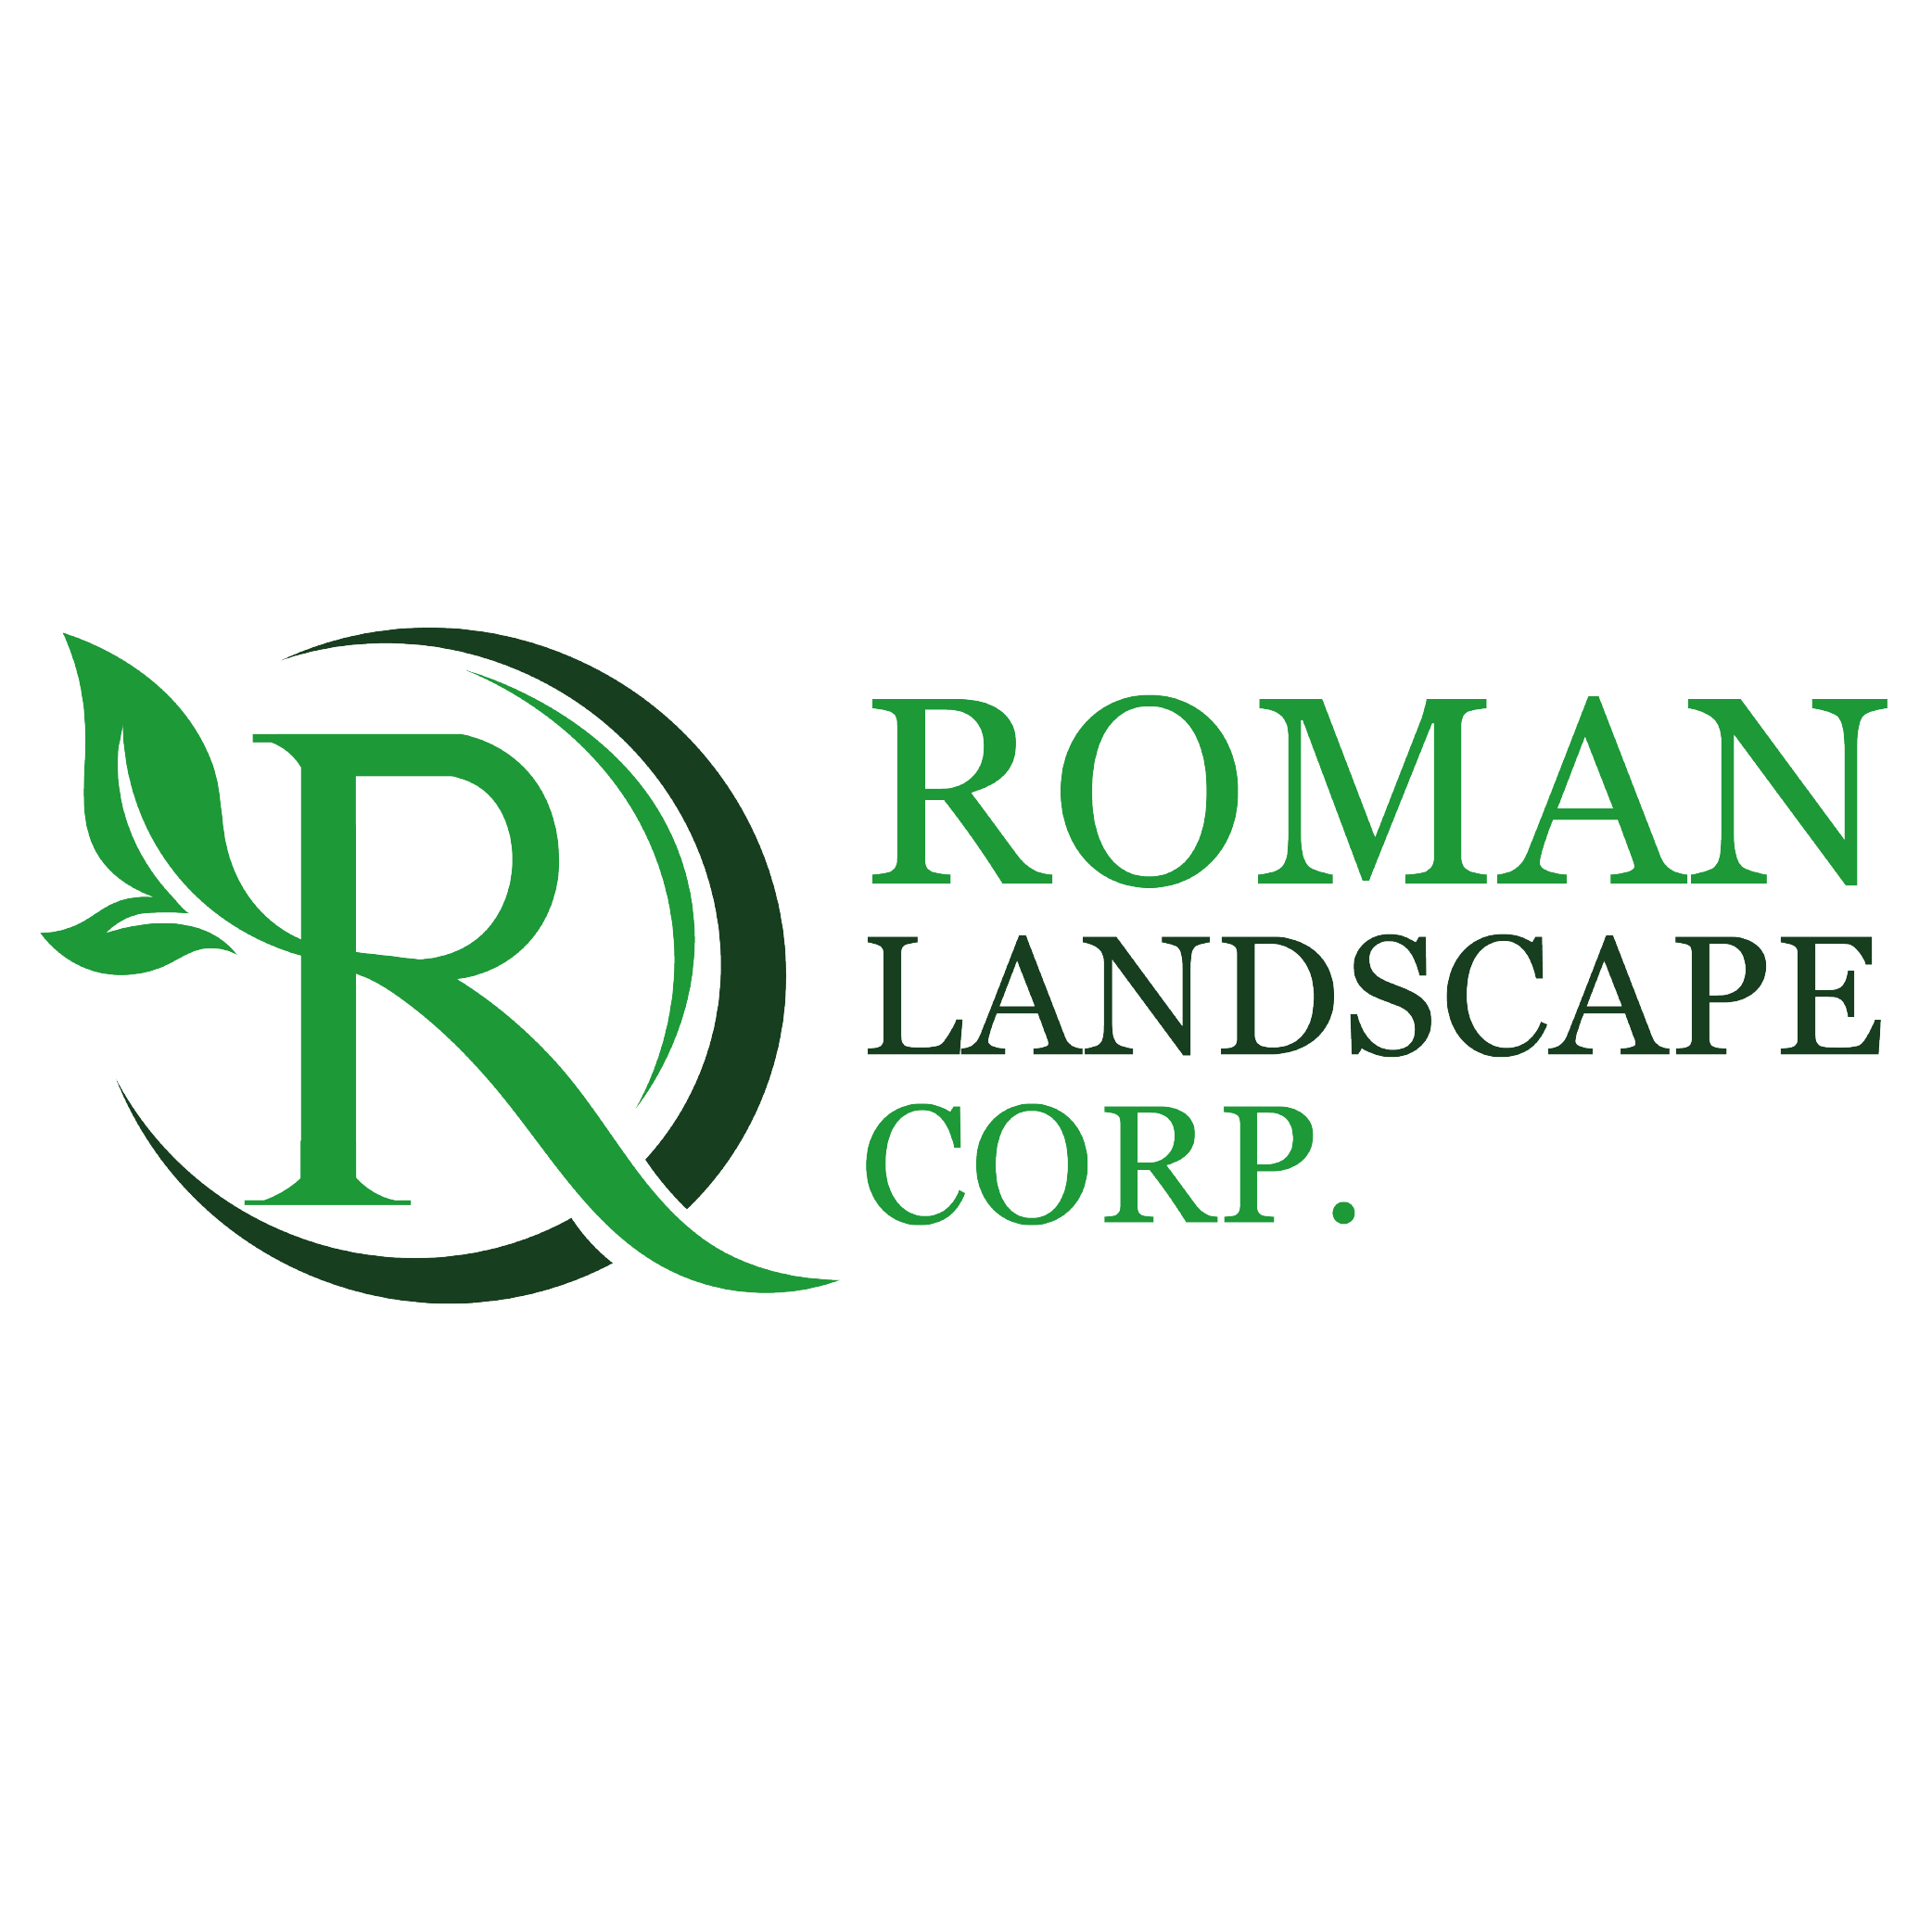 Roman landscape corp